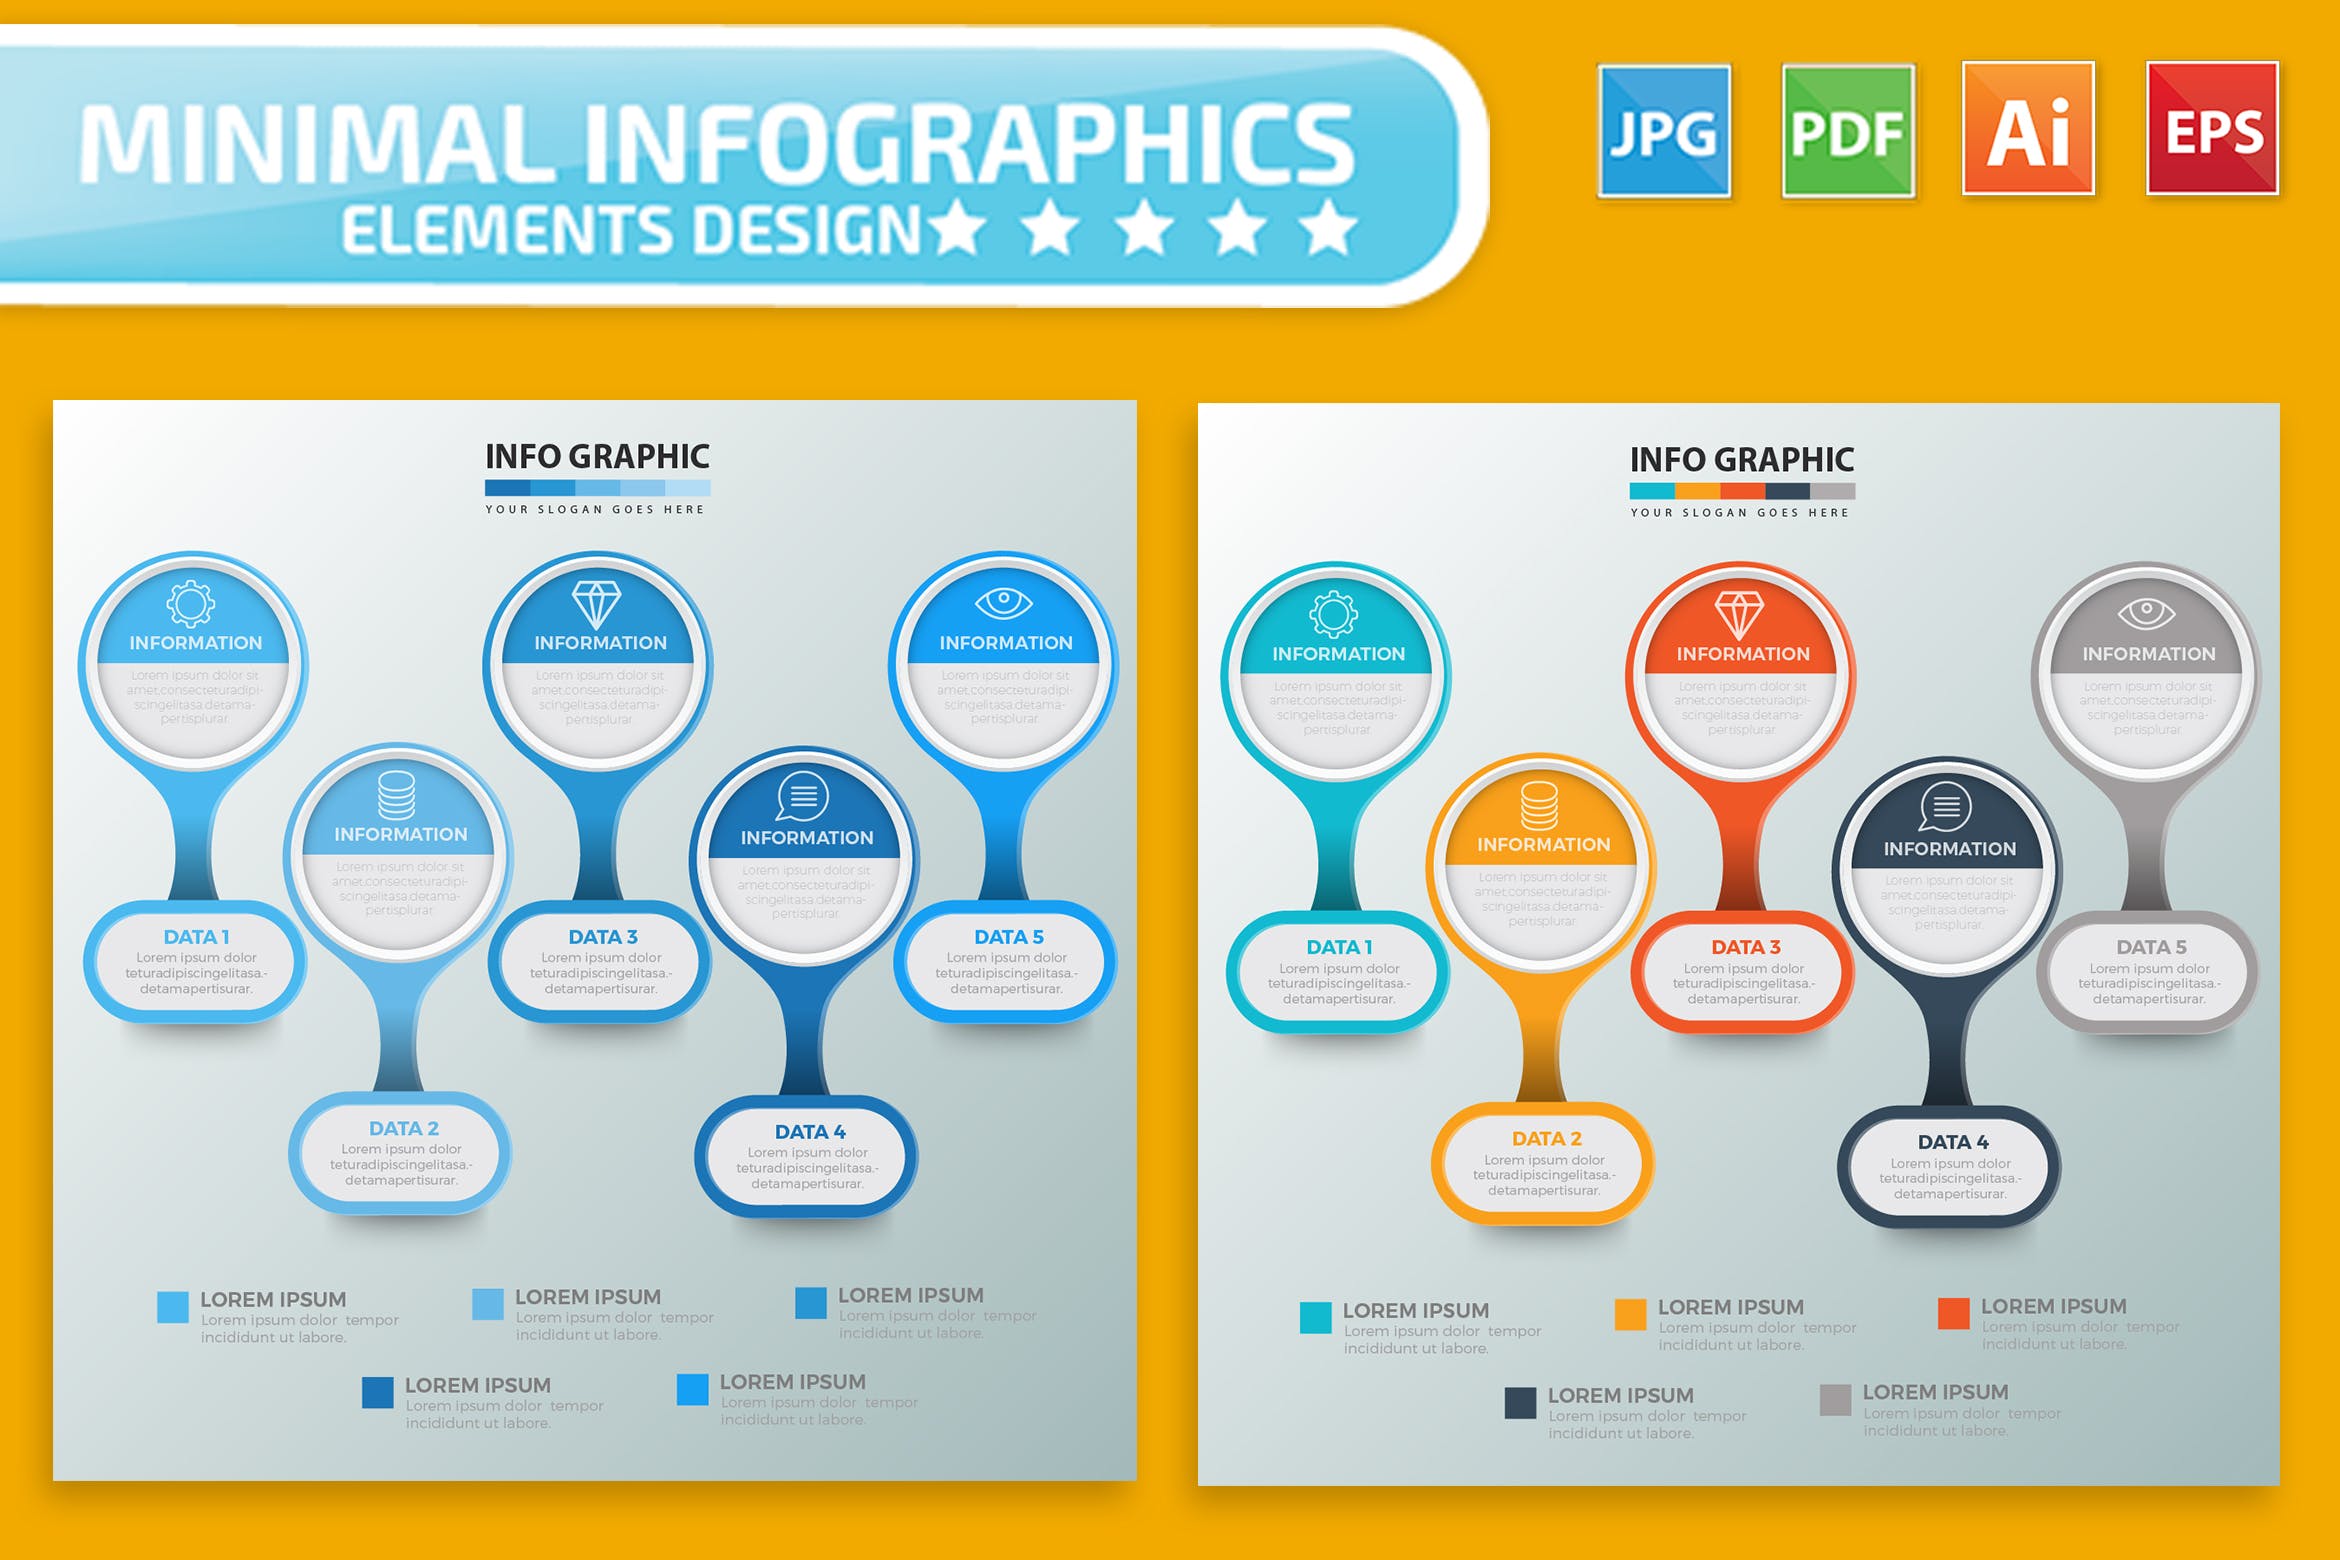 要点说明/重要特征信息图表矢量图形16图库精选素材v2 Infographic Elements Design插图